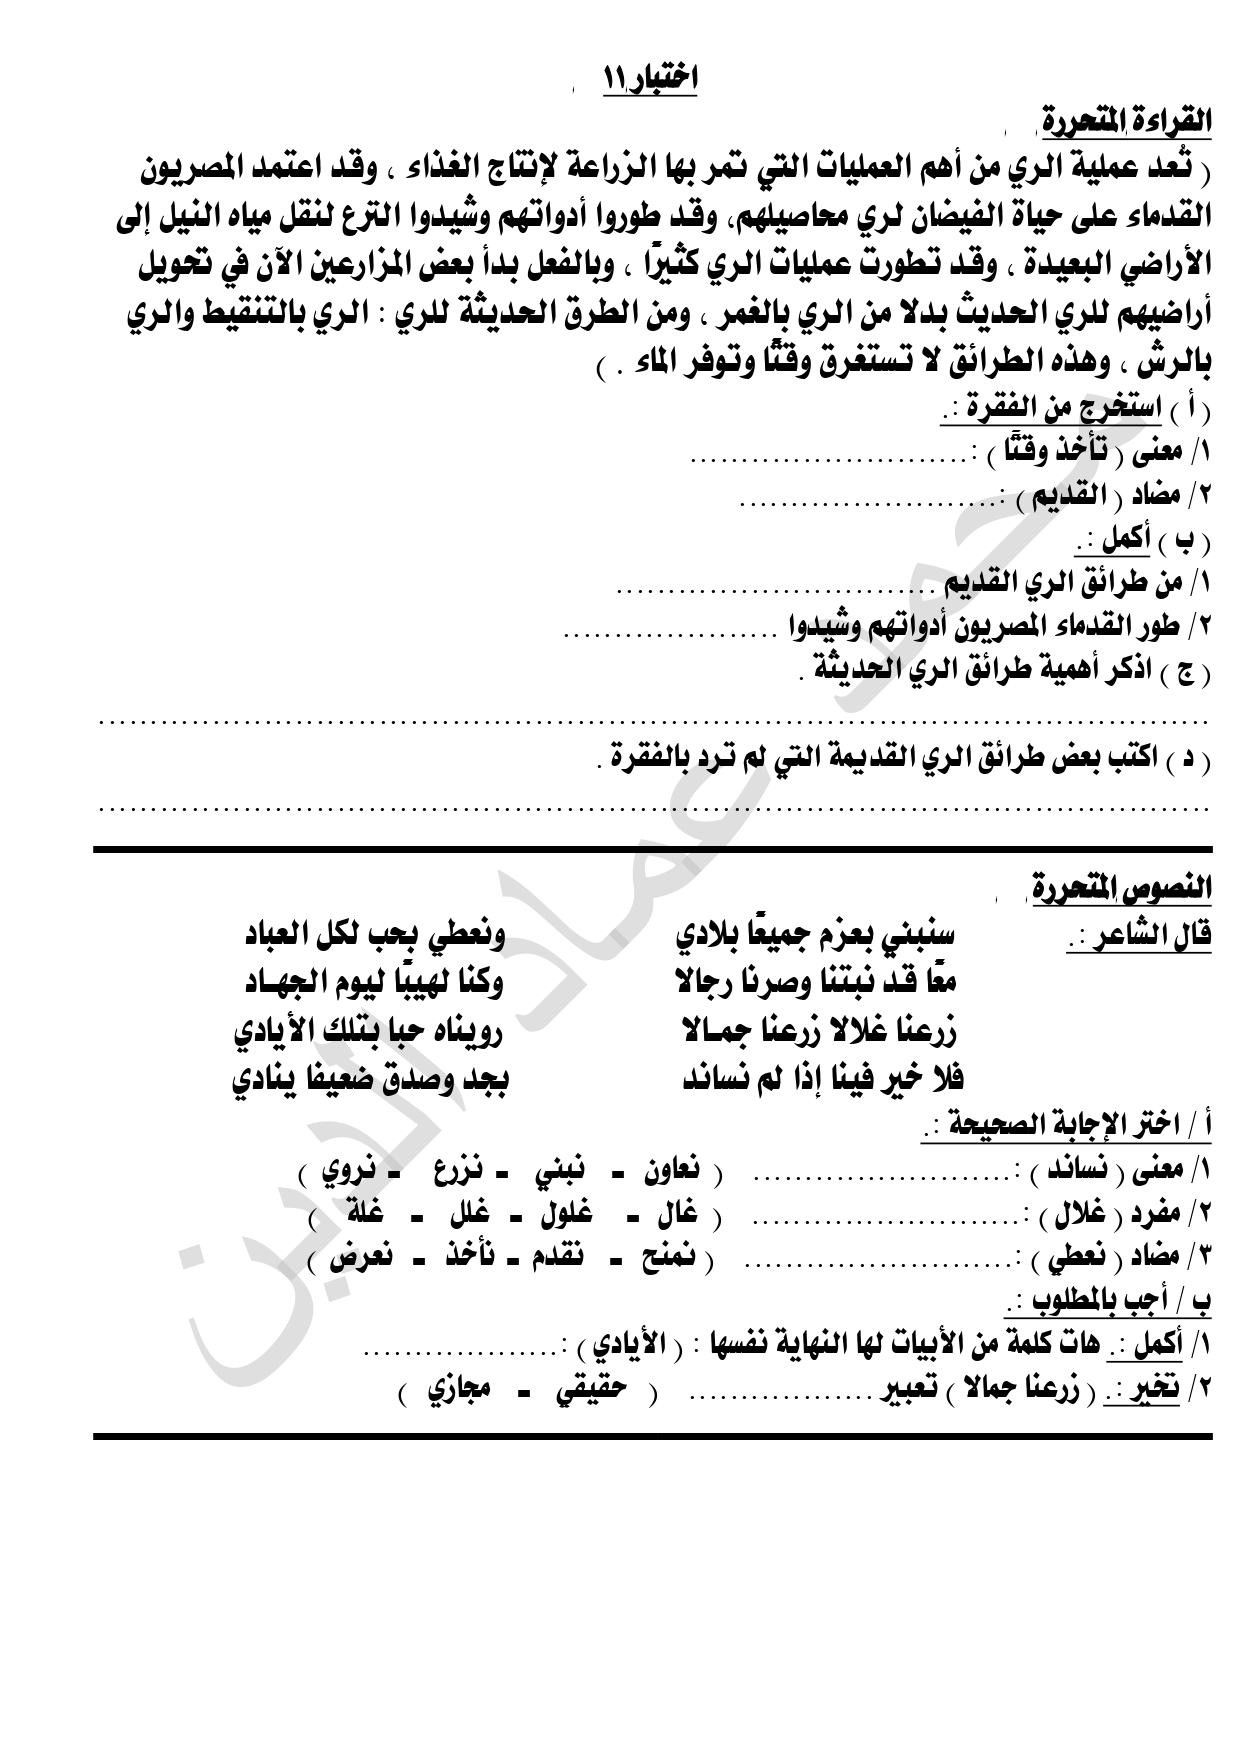 الاختبار الحادي عشرالمتحرر في اللغة العربية لطلاب الصف الرابع الابتدائي ترم ثاني 2022